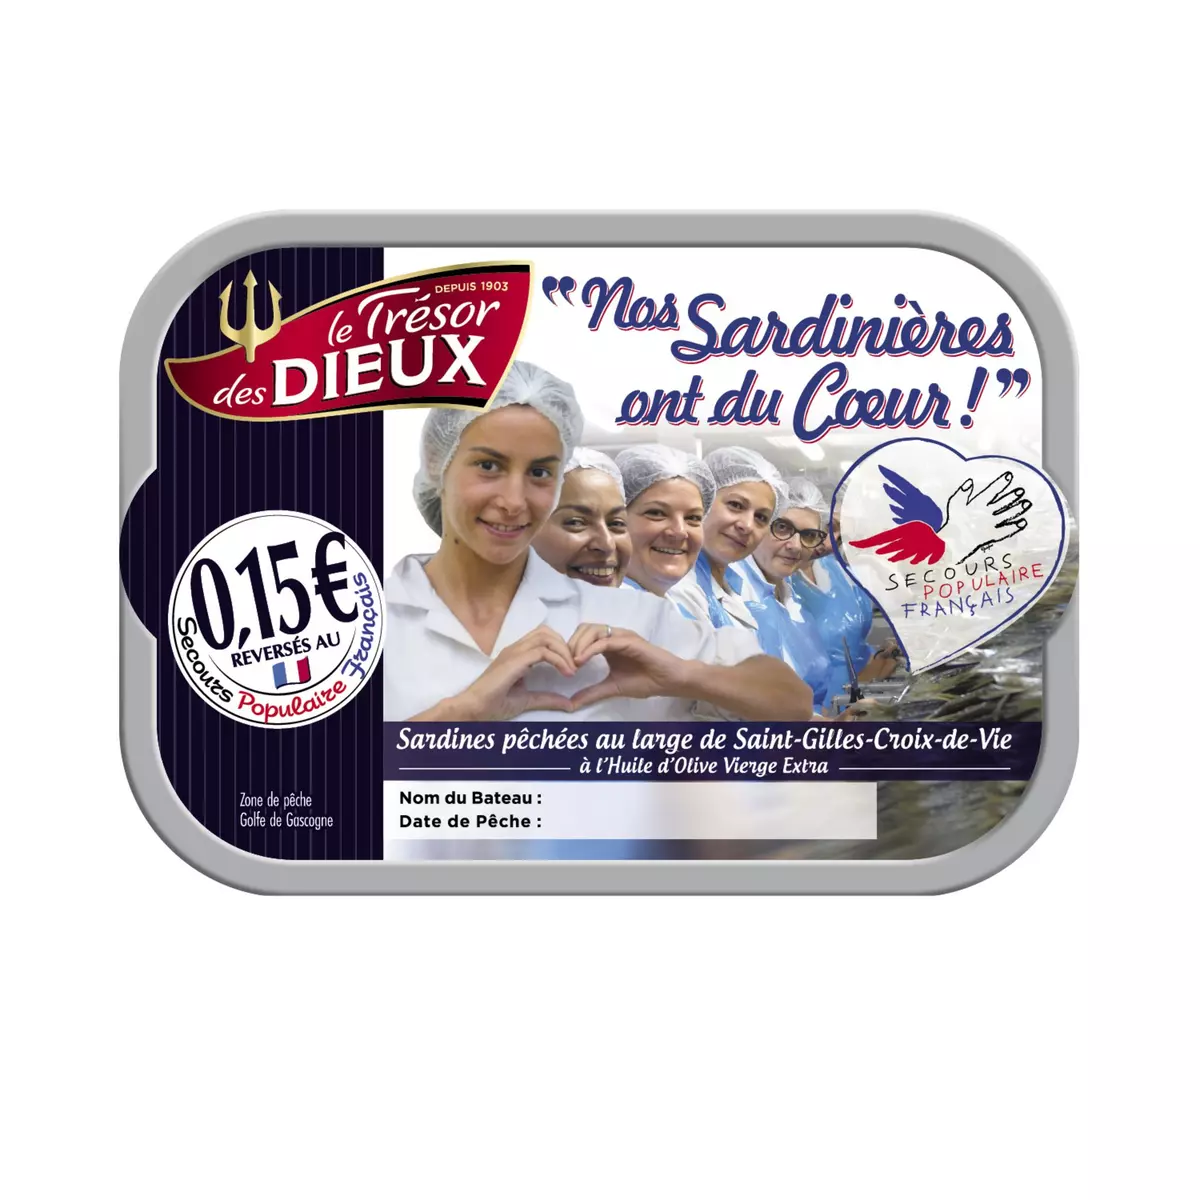 LE TRESOR DES DIEUX Sardines à l'huile d'olive vierge extra 115g